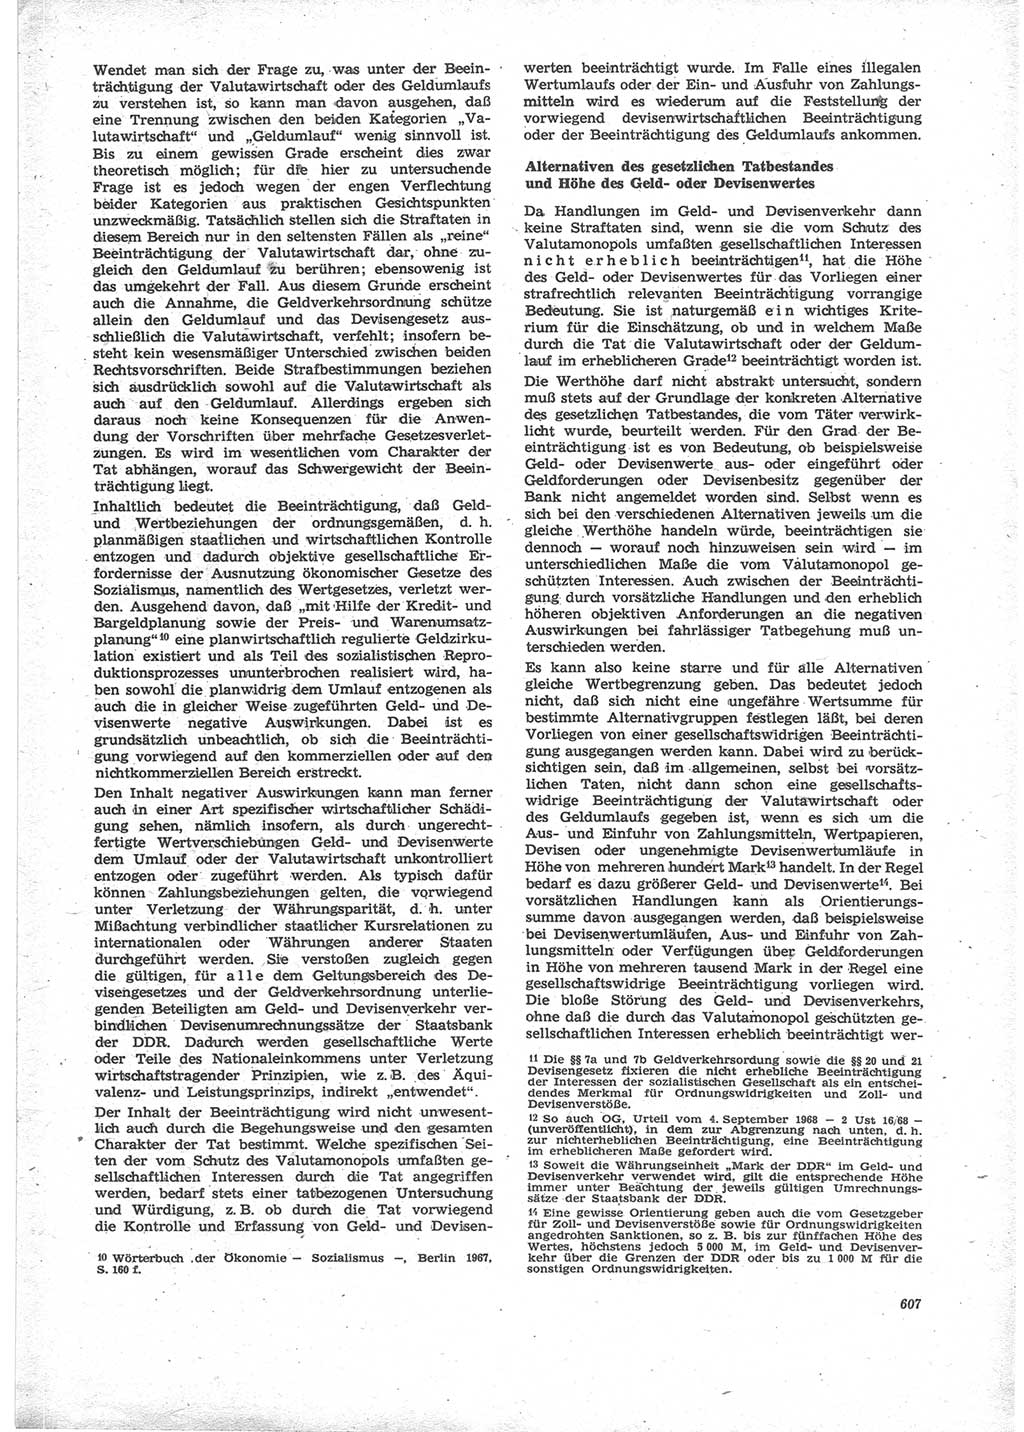 Neue Justiz (NJ), Zeitschrift für Recht und Rechtswissenschaft [Deutsche Demokratische Republik (DDR)], 24. Jahrgang 1970, Seite 607 (NJ DDR 1970, S. 607)